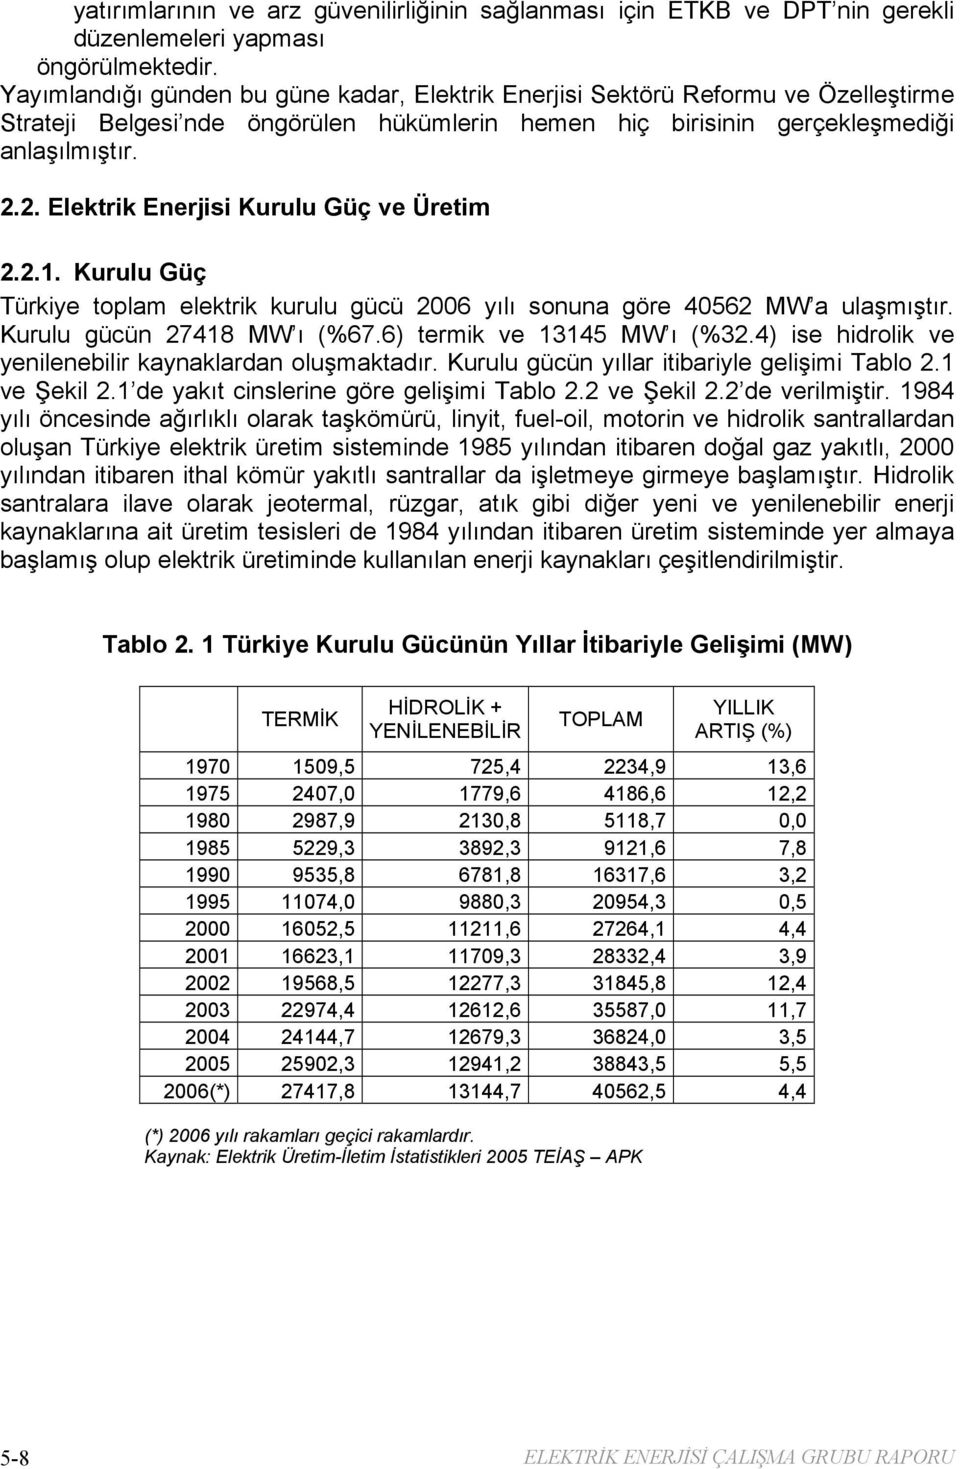 2. Elektrik Enerjisi Kurulu Güç ve Üretim 2.2.1. Kurulu Güç Türkiye toplam elektrik kurulu gücü 2006 yılı sonuna göre 40562 MW a ulaşmıştır. Kurulu gücün 27418 MW ı (%67.6) termik ve 13145 MW ı (%32.